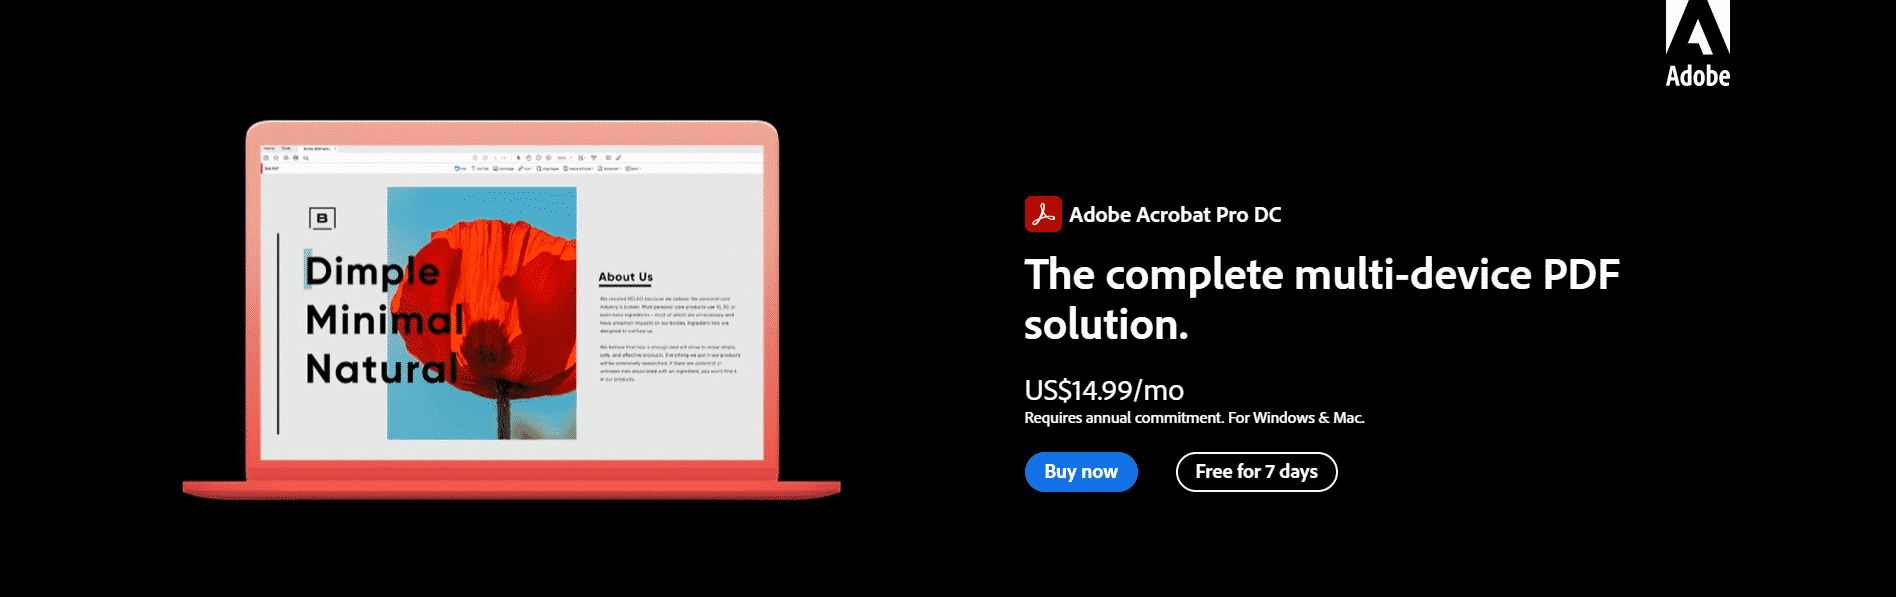 Adobe Acrobat Pro Pricing